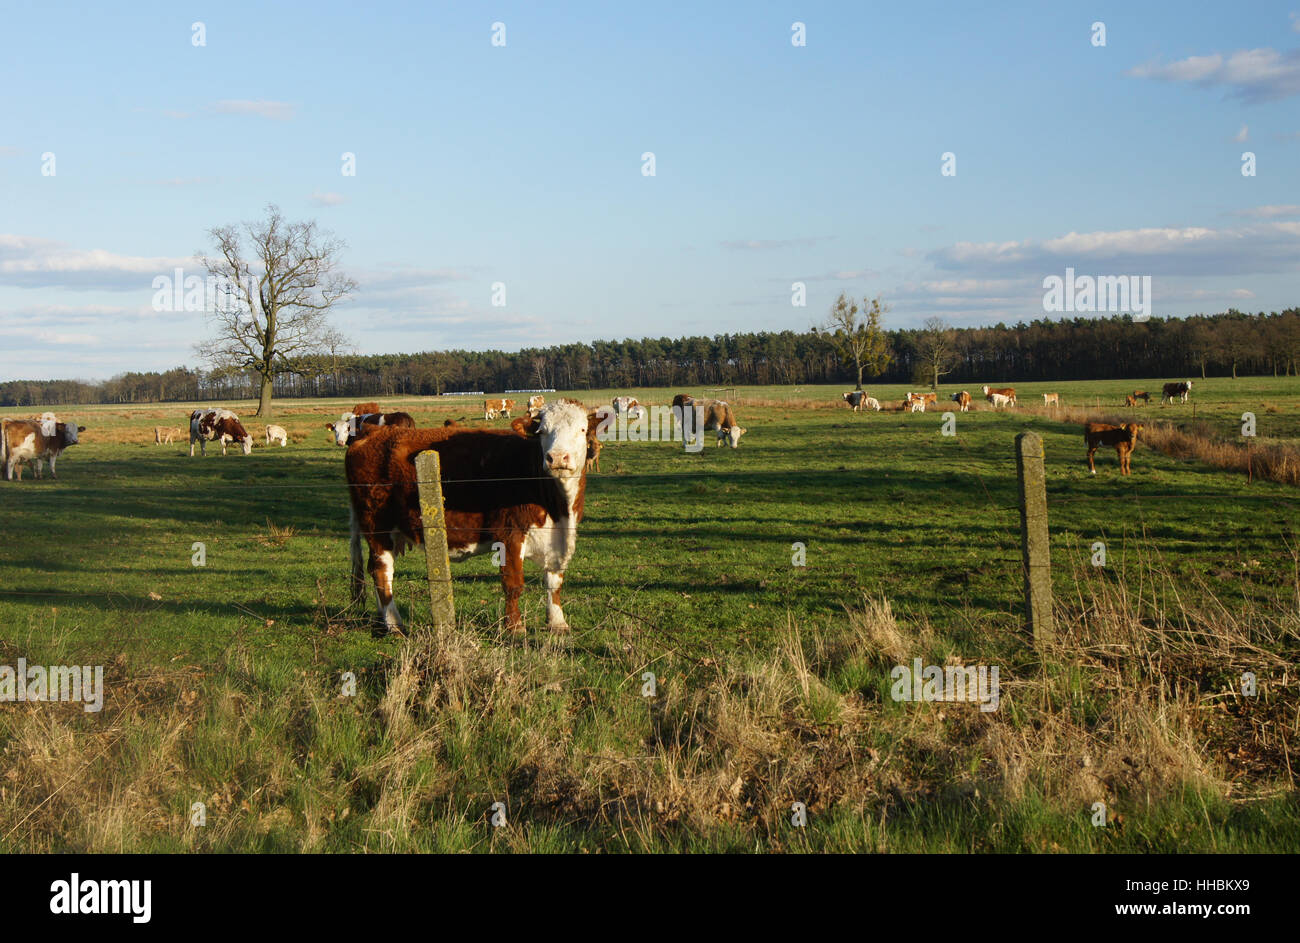 La cotenna, albero, alberi, agricoltura, allevamento, luce solare, boschi, mucca, di sole e di vacche, Foto Stock